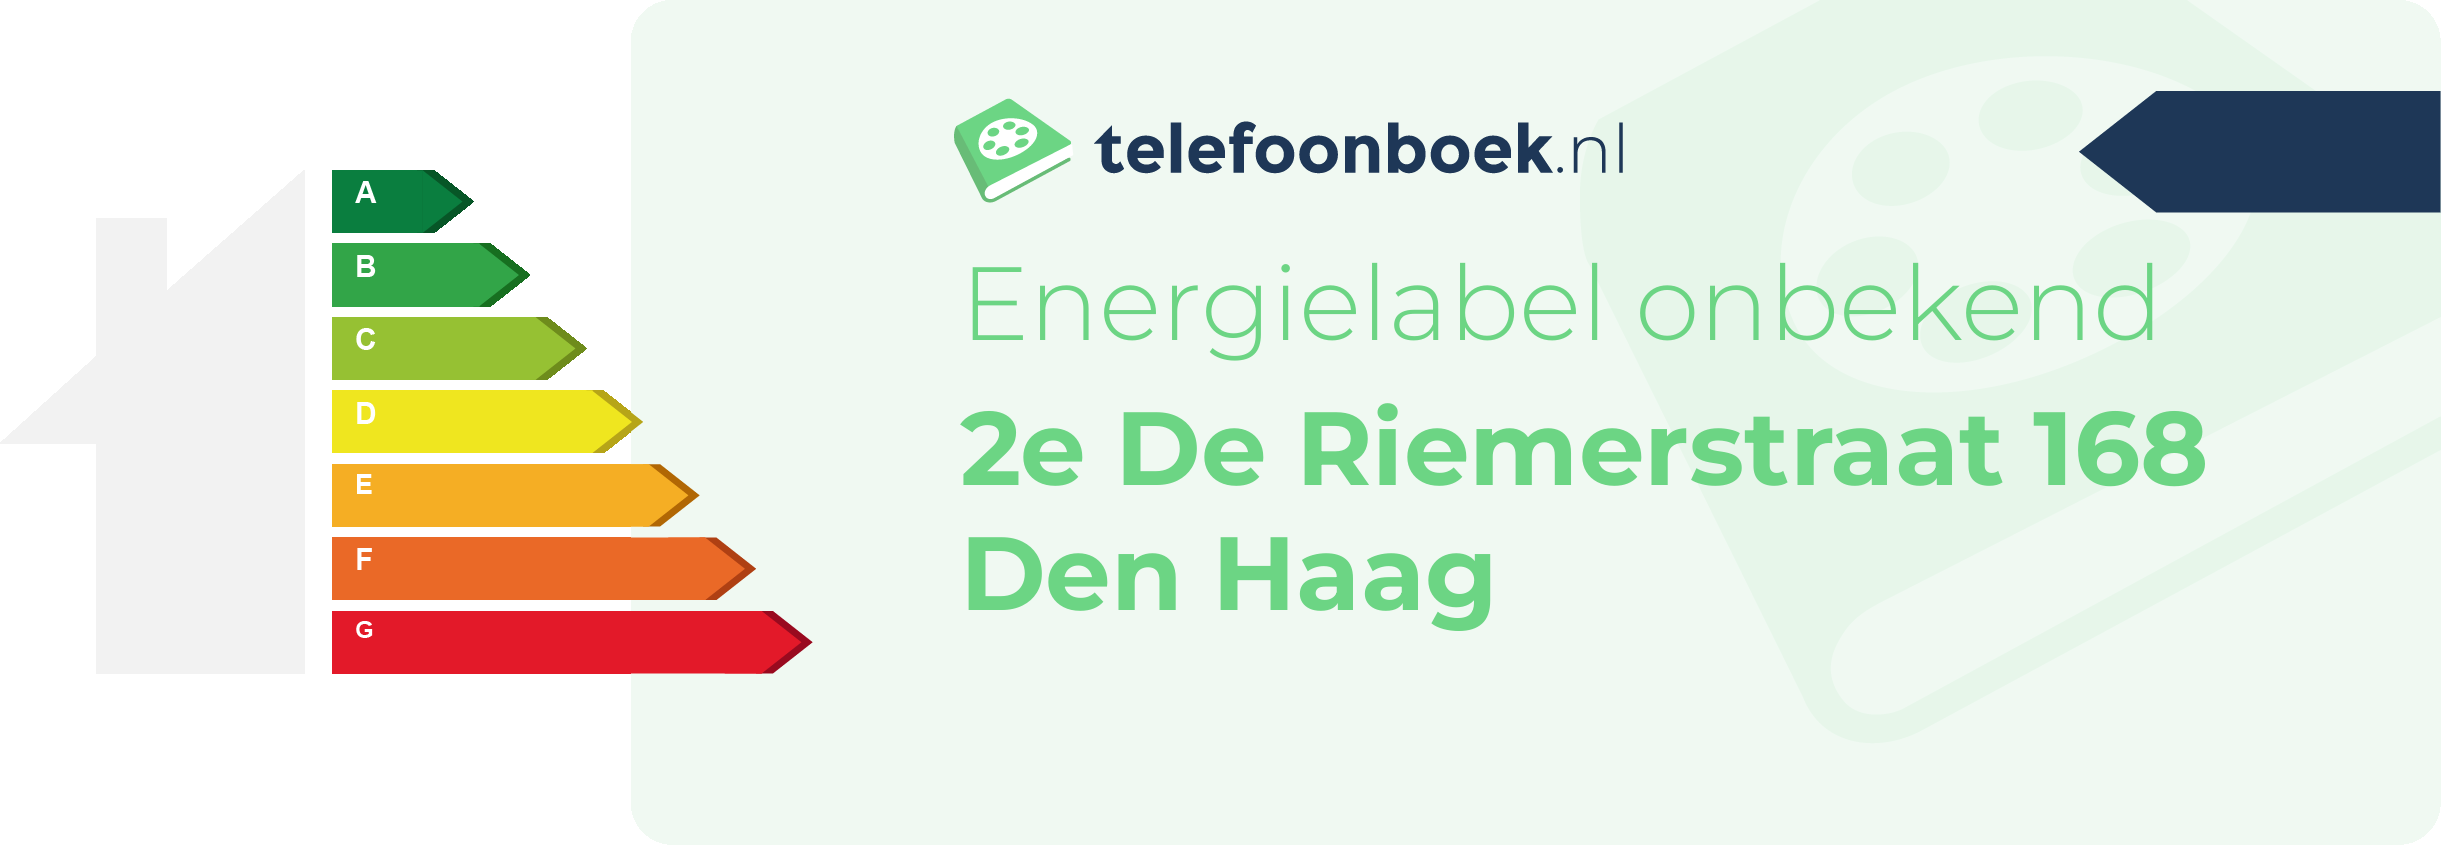 Energielabel 2e De Riemerstraat 168 Den Haag